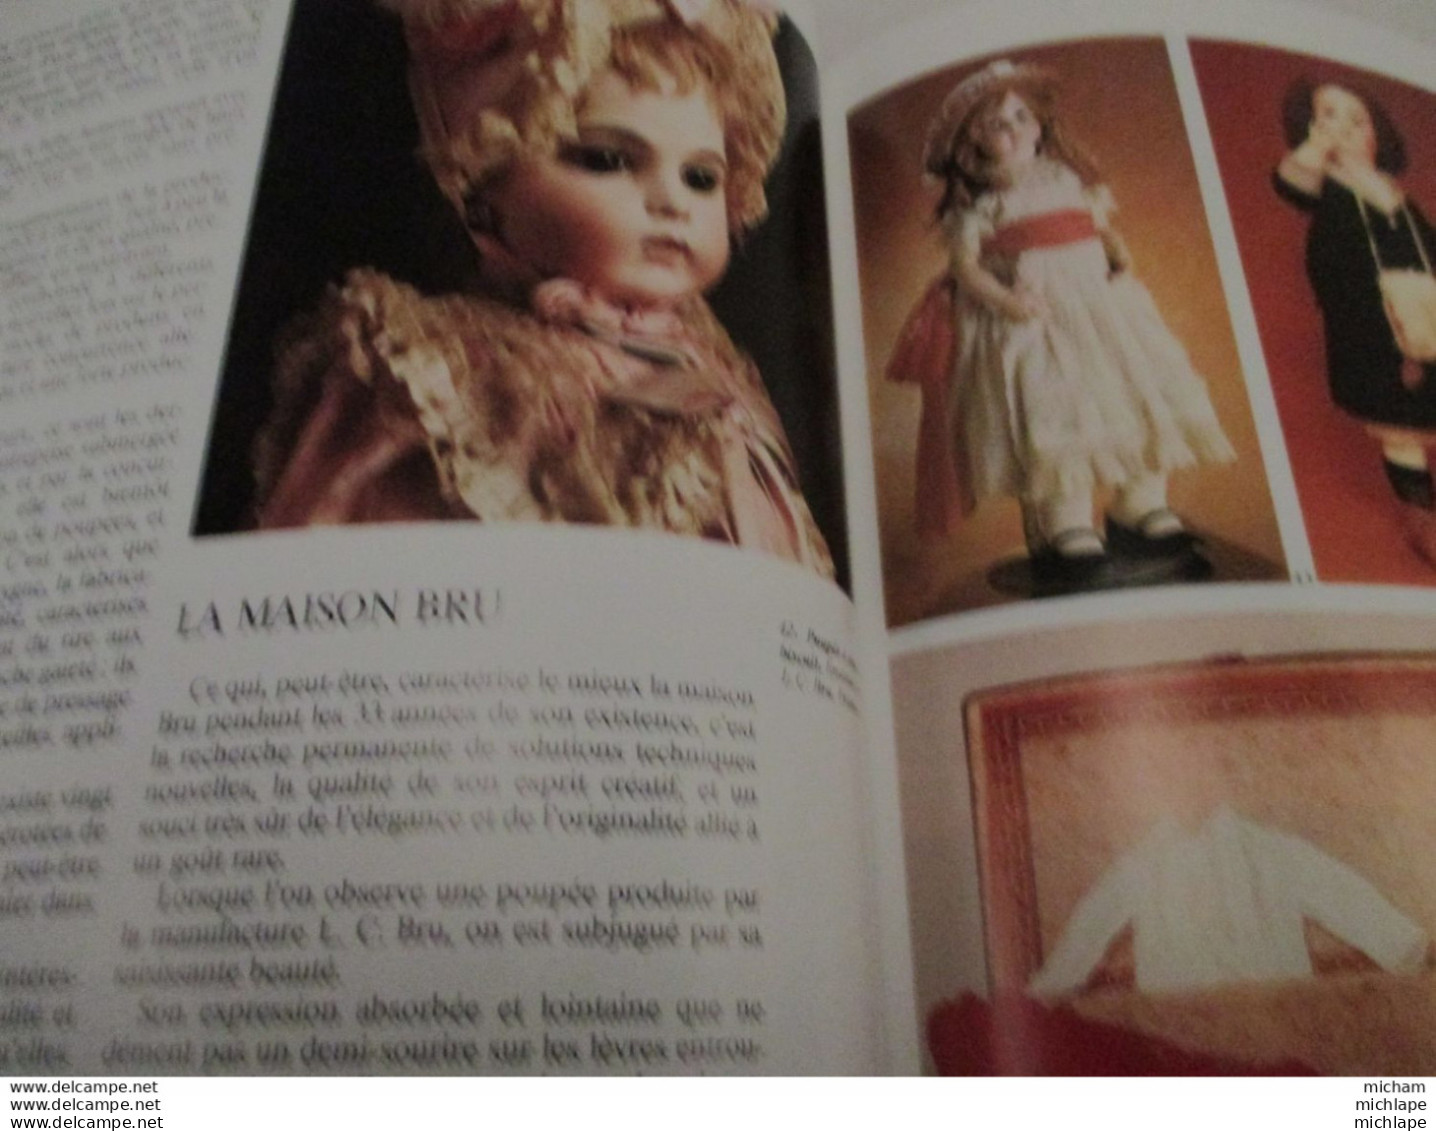 antiquité  et objets d'art - poupées   - 1990 - 79 pages  -edit. fabri - format  22 x 29 -trés bon état